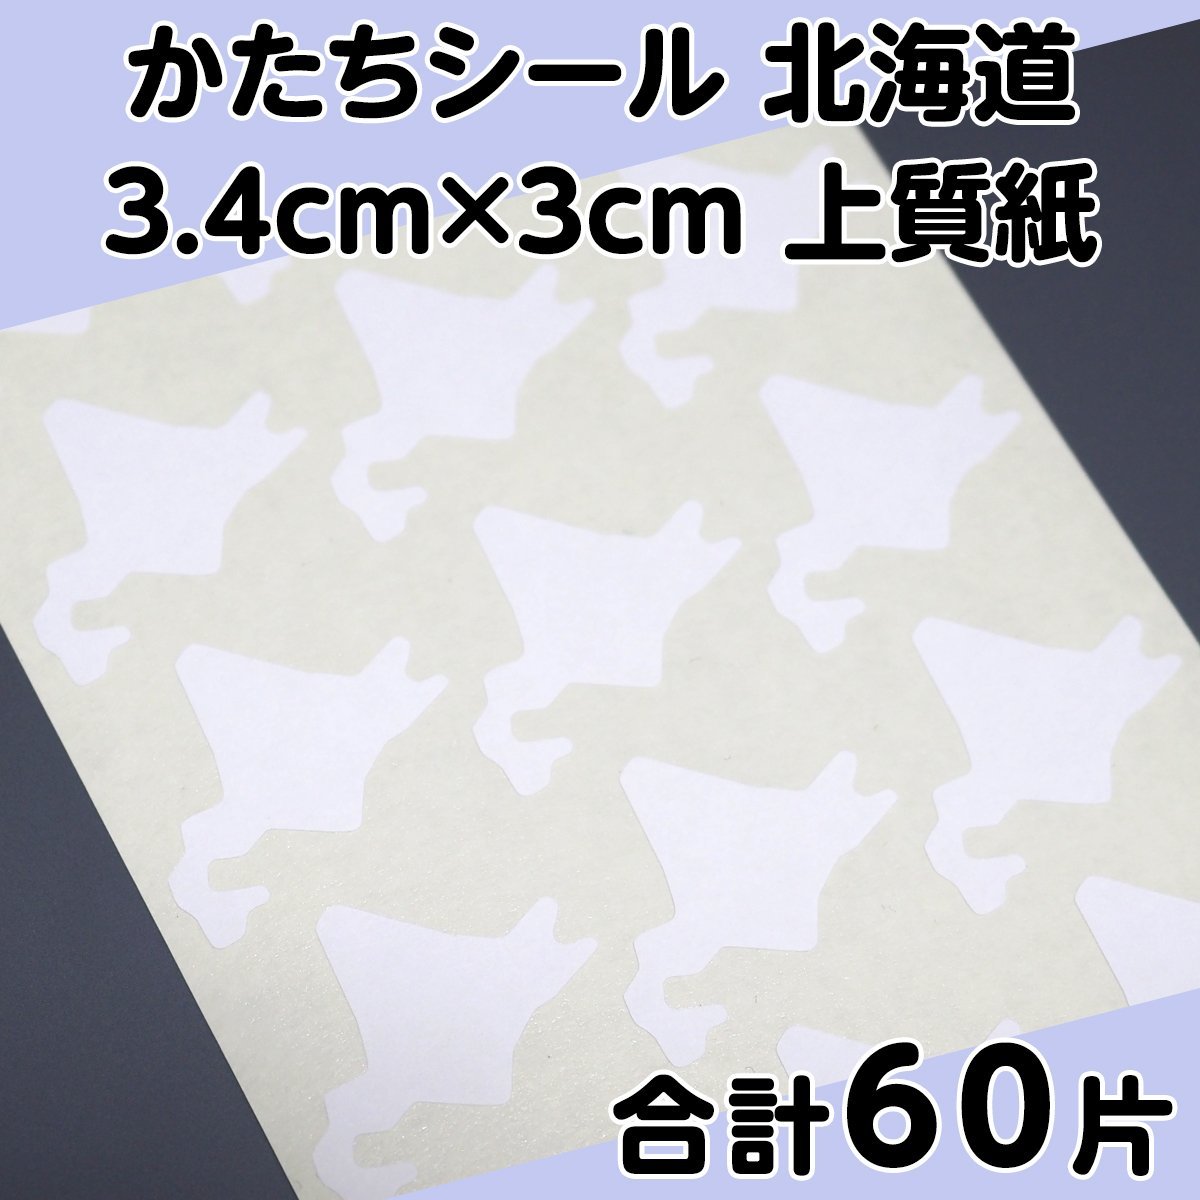 かたちシール 北海道 3.4cm×3cm 上質紙 15片 4シート 合計60片 定形郵便送料無料の画像1